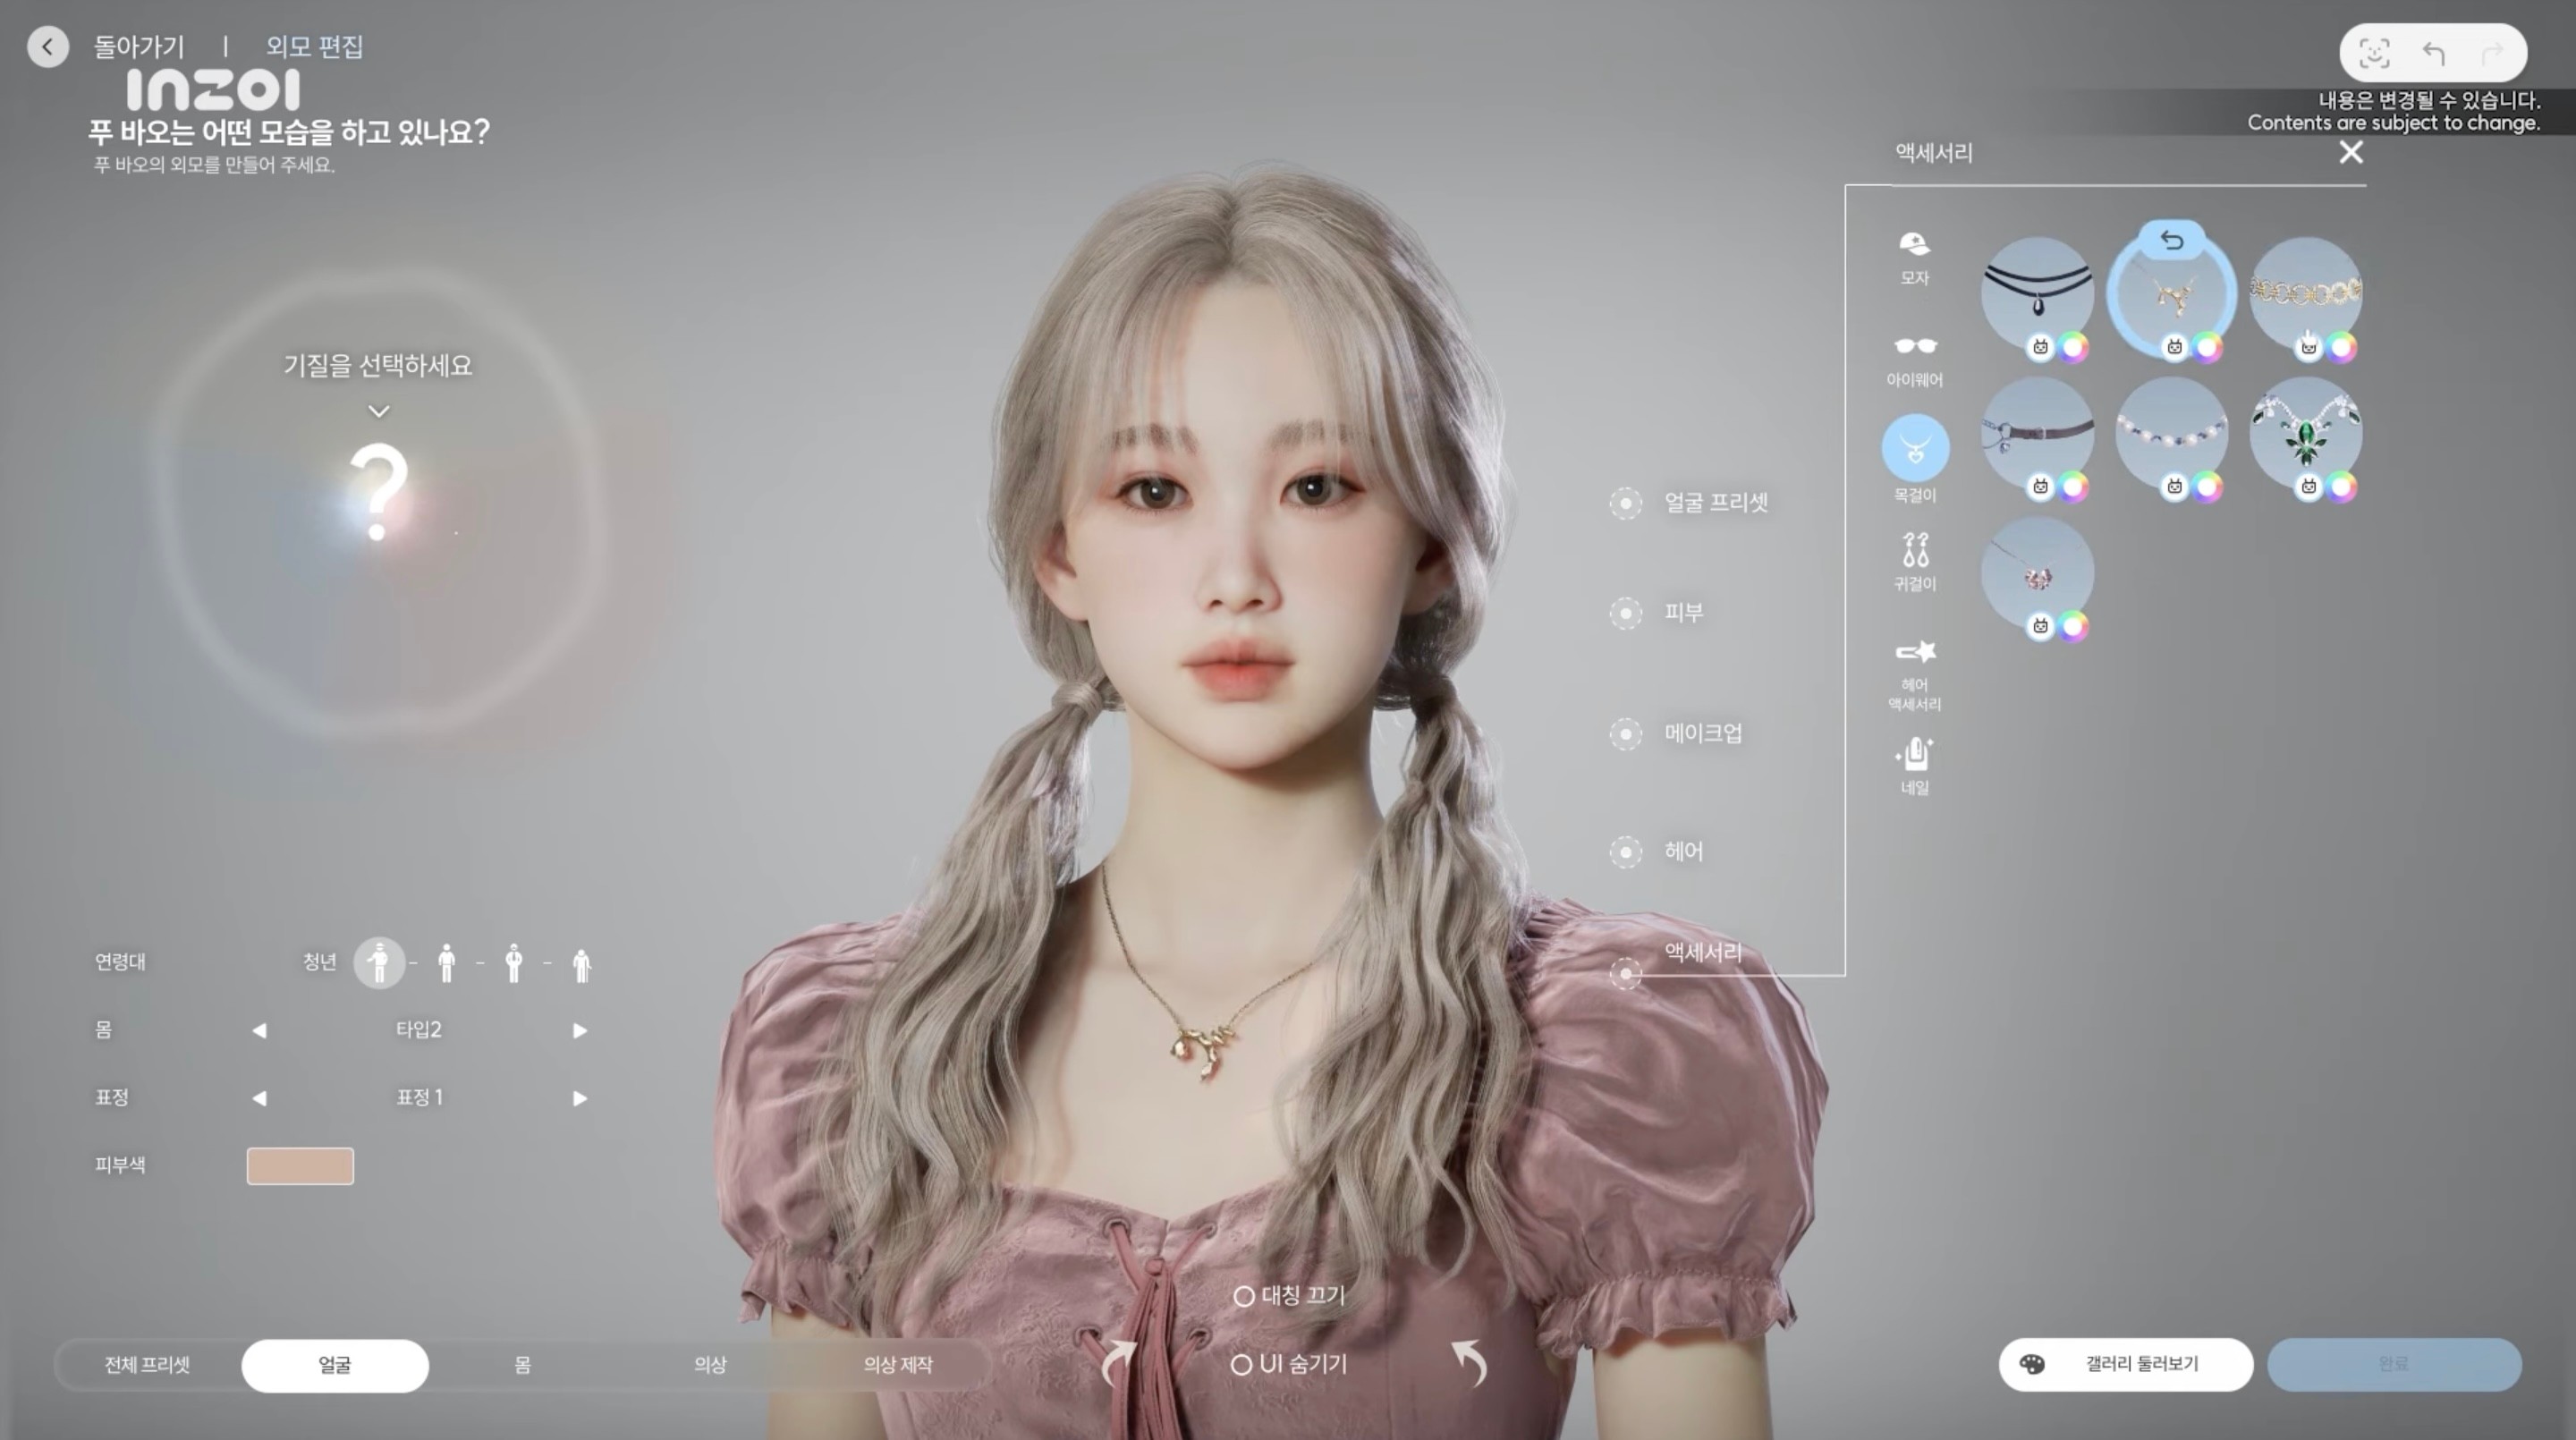 韓國版模擬人生《inZOI》新功能演示 內容豐富多姿